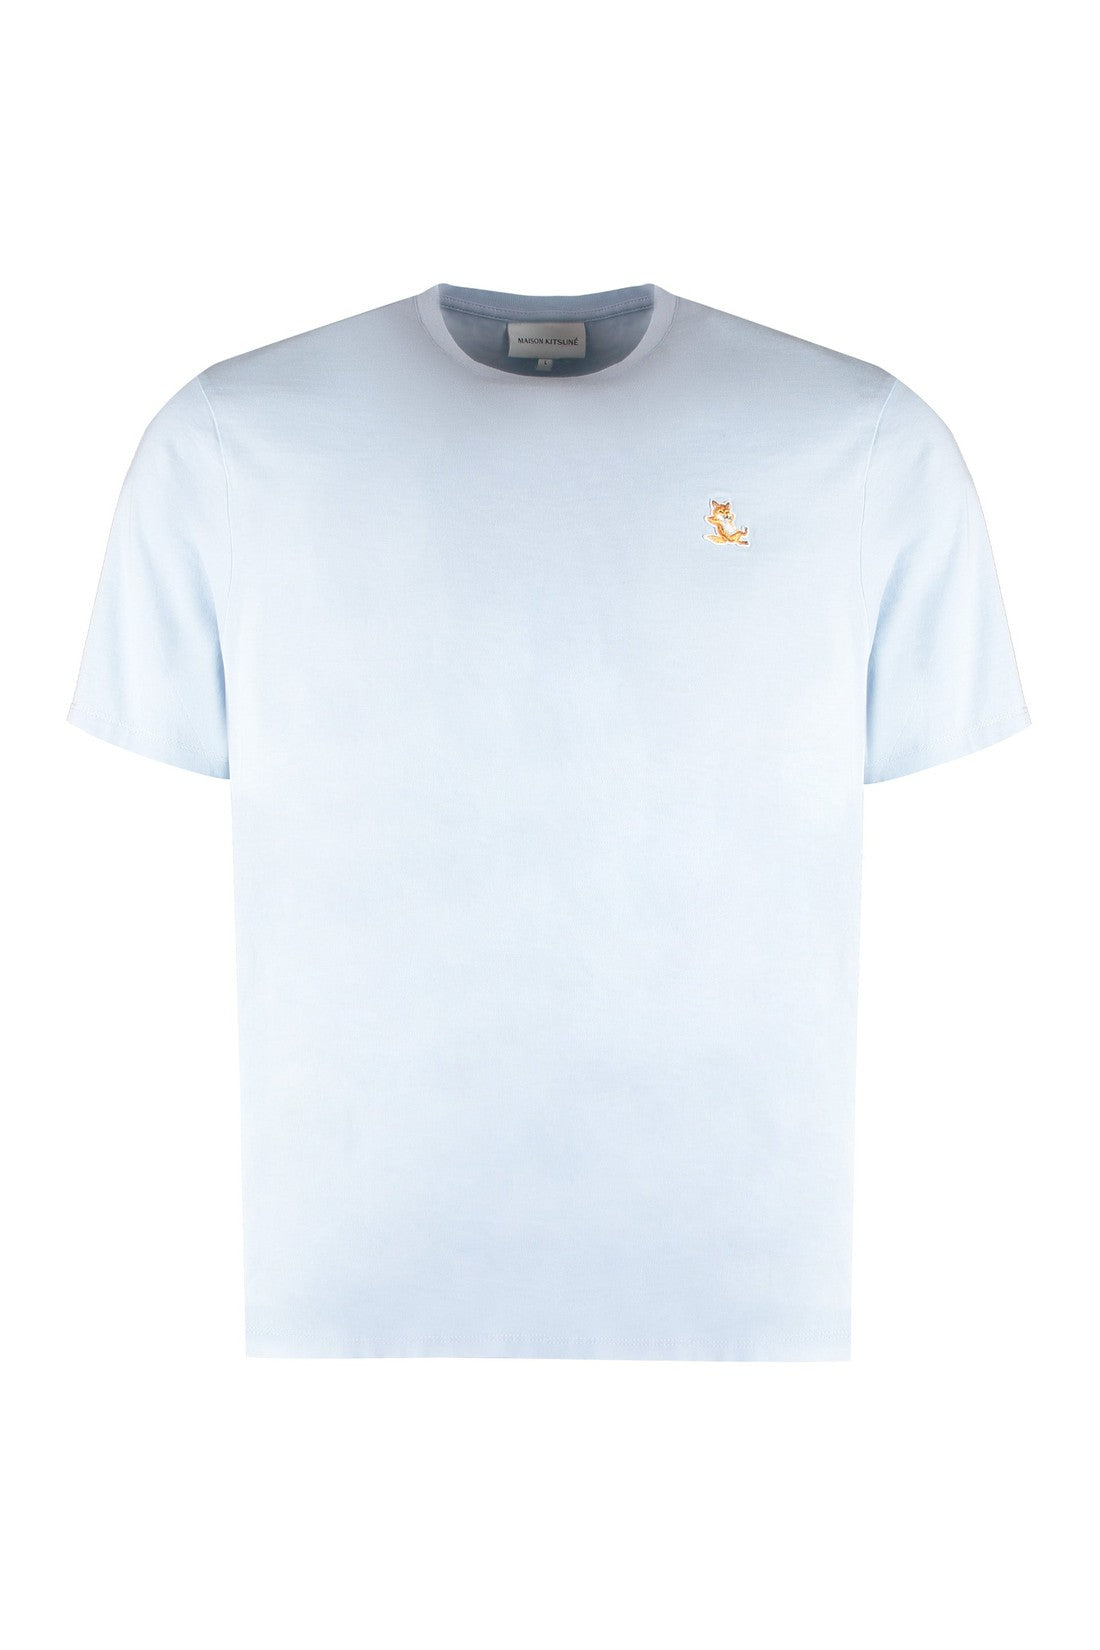 Maison Kitsuné-OUTLET-SALE-Cotton crew-neck T-shirt-ARCHIVIST